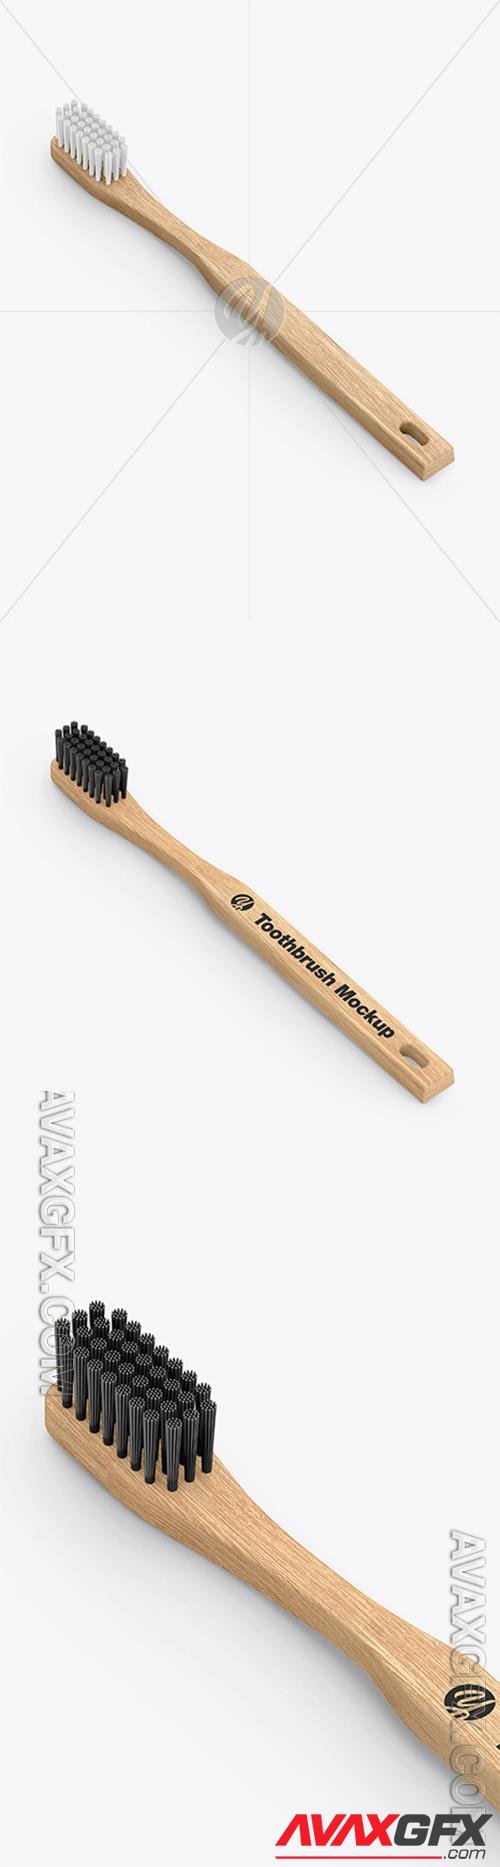 Wooden Toothbrush Mockup 78532 TIF